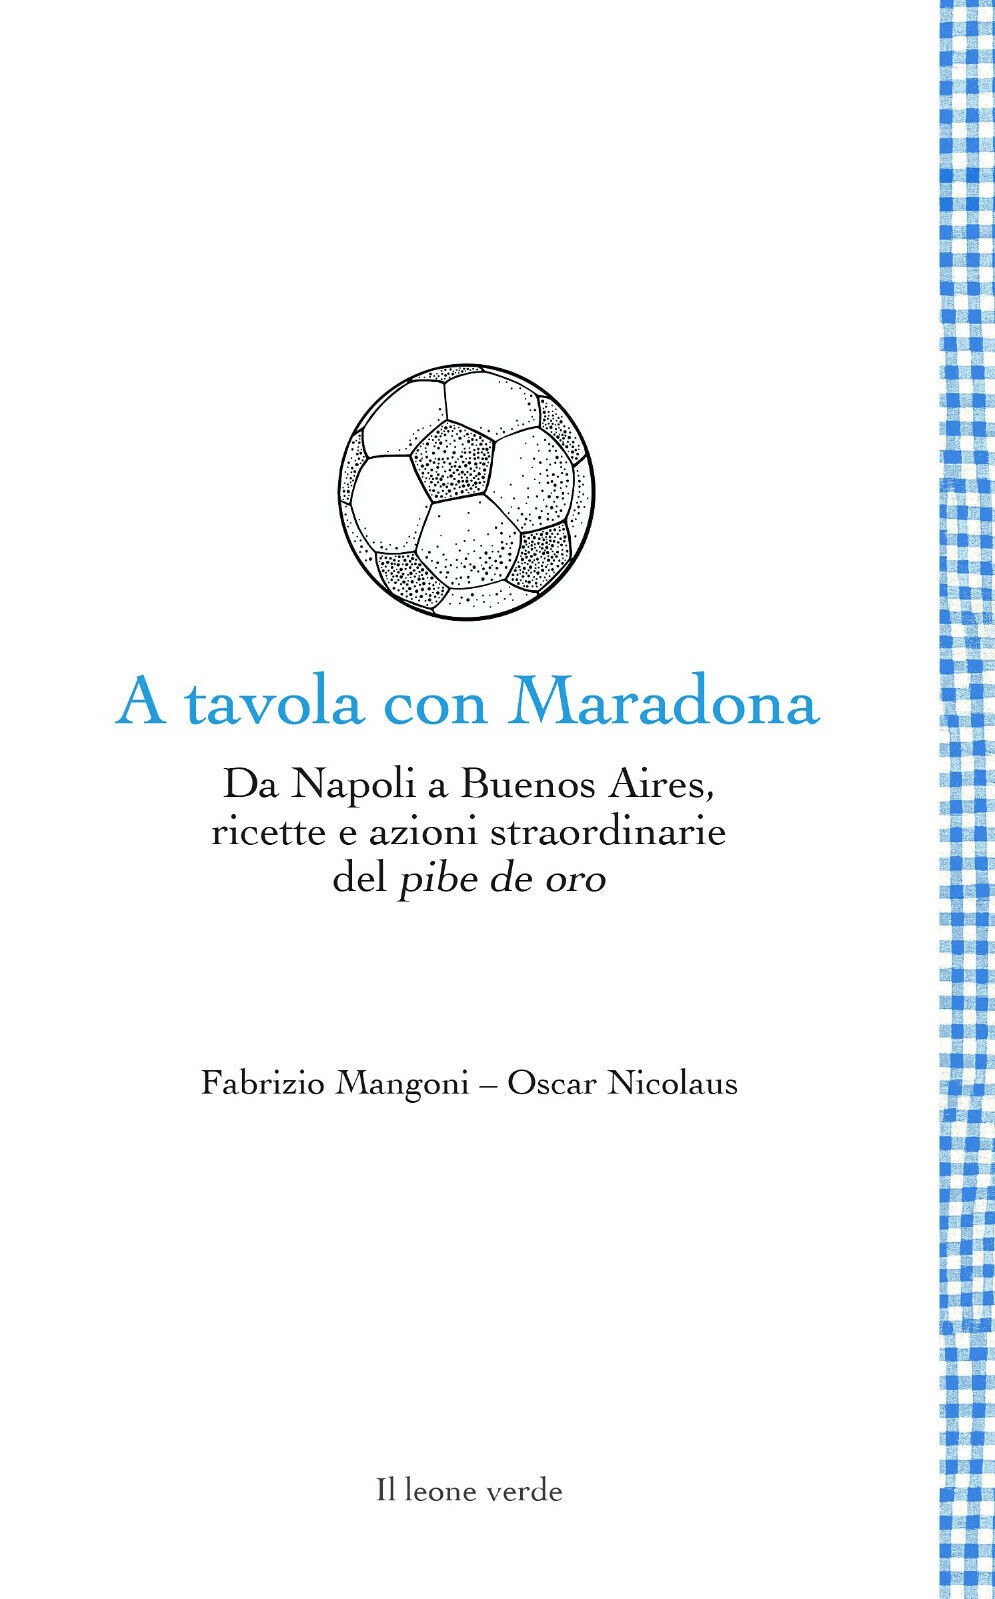 A tavola con Maradona - Fabrizio Mangoni, Oscar Nicolaus - Il Leone Verde- 2021 